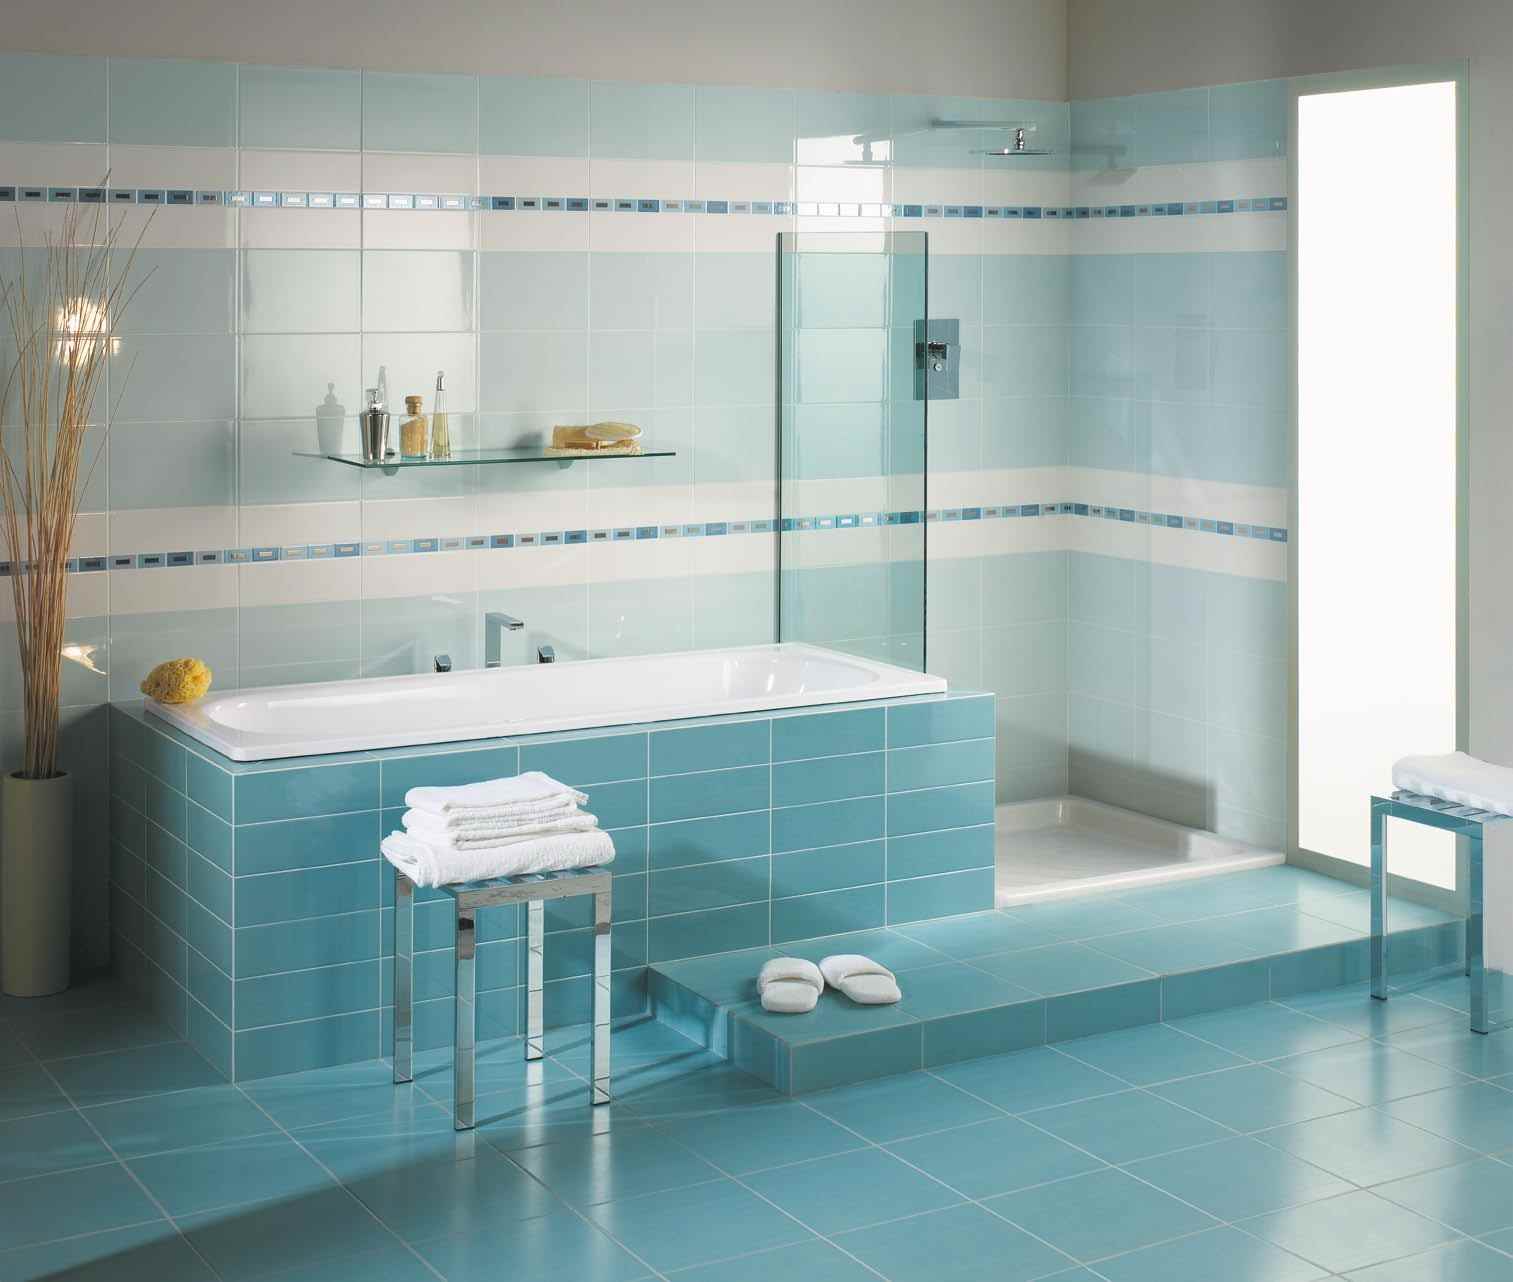 option de décor inhabituel pour la pose de carreaux dans la salle de bain